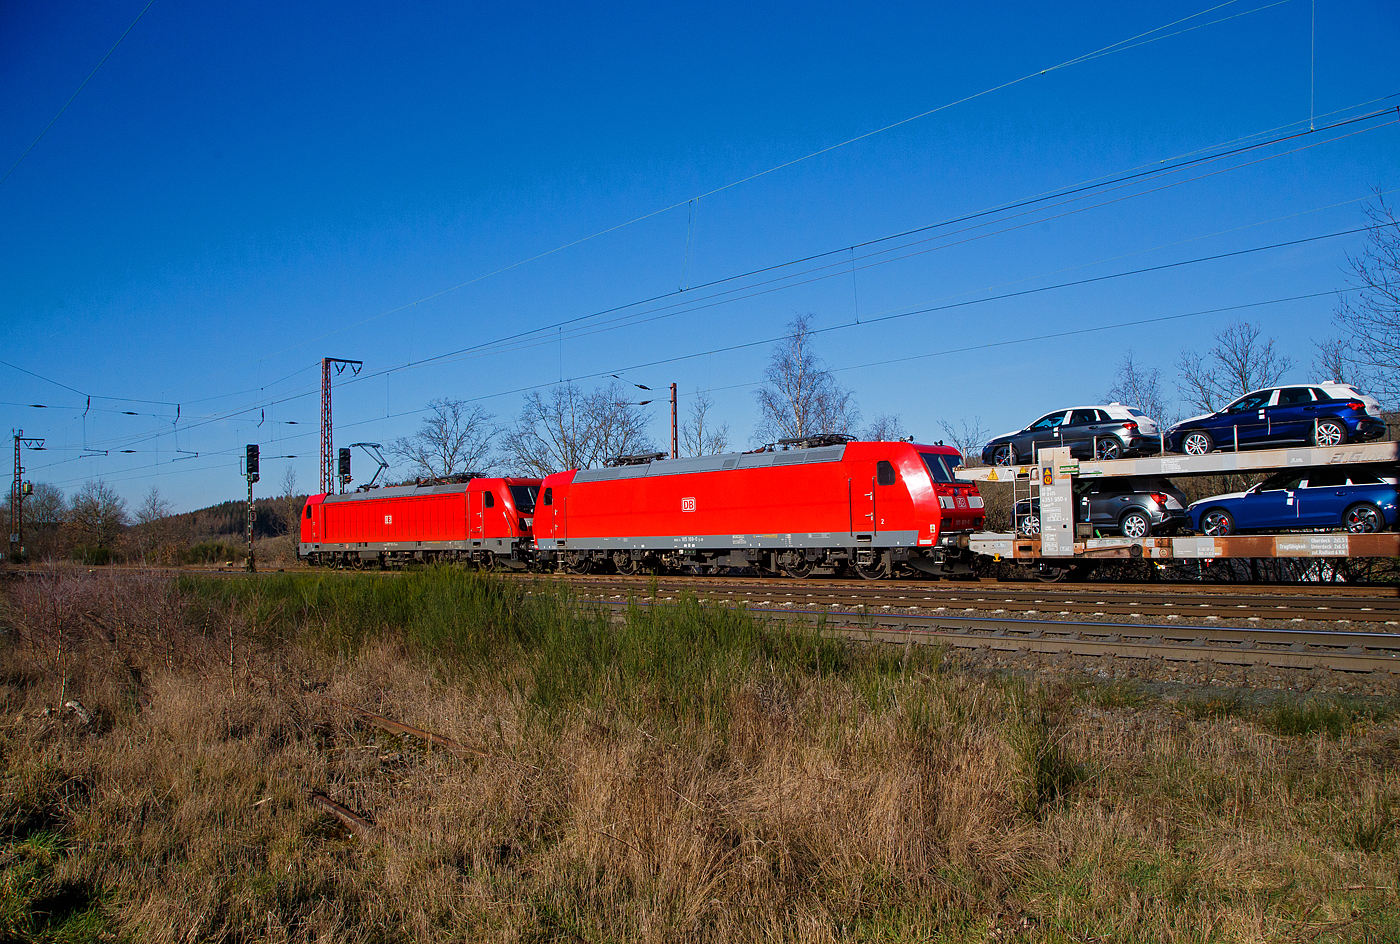 Die DB Cargo 187 161 (91 80 6187 161-5 D-DB) fährt am 08.02.2023 mit der kalten 185 169-0 (91 80 6185 169-0 D-DB) und einem gemischten Güterzug durch Rudersdorf (Kr. Siegen) in Richtung Siegen bzw. Kreuztal.

Die Bombardier TRAXX F140 AC3 wurde 2018 von der Bombardier Transportation GmbH in Kassel unter der Fabriknummer KAS 35490 gebaut. Die Bombardier TRAXX F140 AC1 wurde 2004 von der Bombardier Transportation GmbH in Kassel unter der Fabriknummer 33647 gebaut.